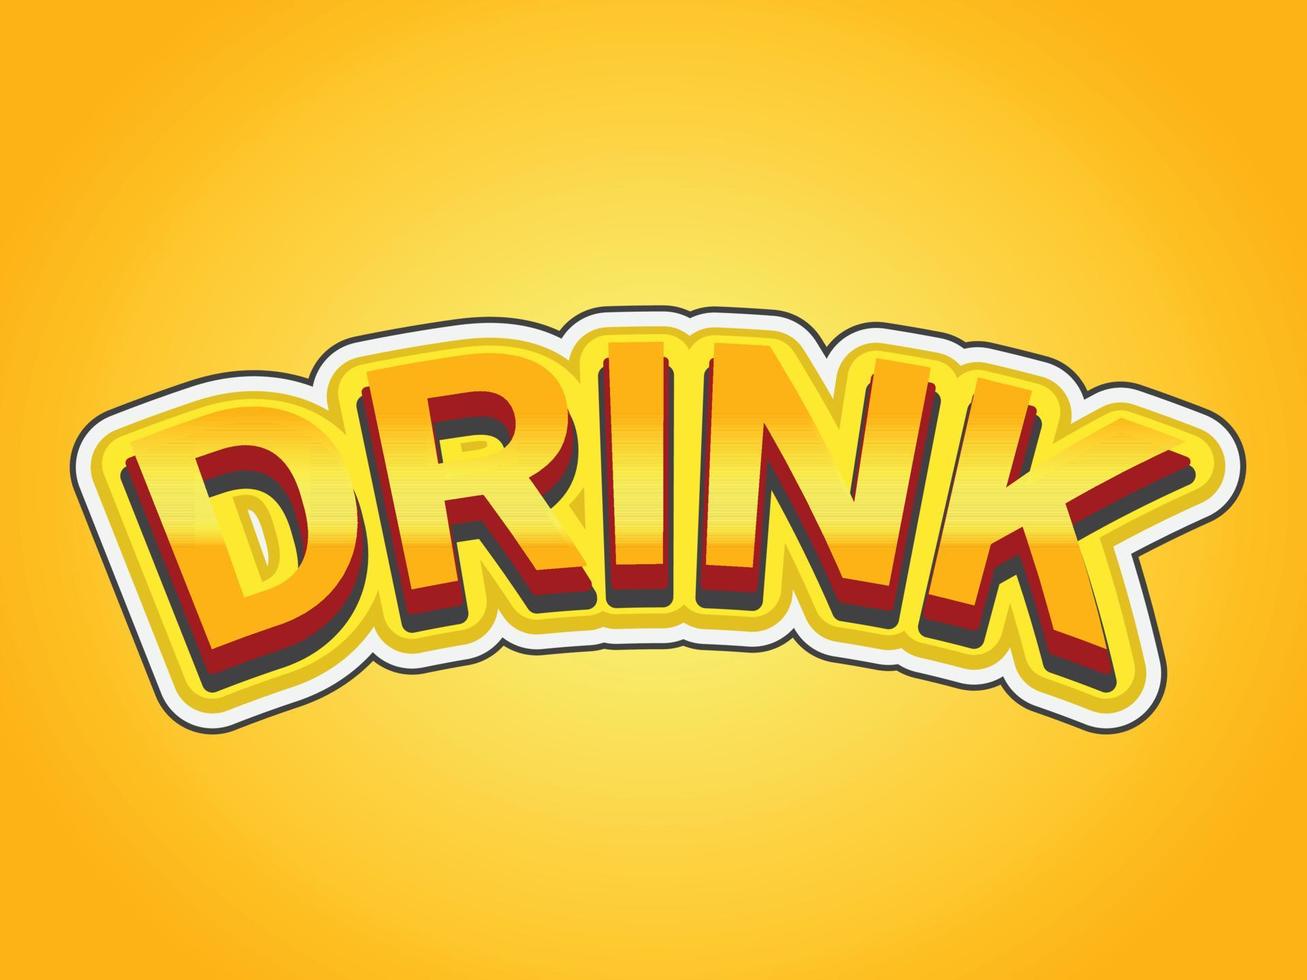 plantilla de efecto de texto de bebida con uso de estilo en negrita 3d para logotipo vector